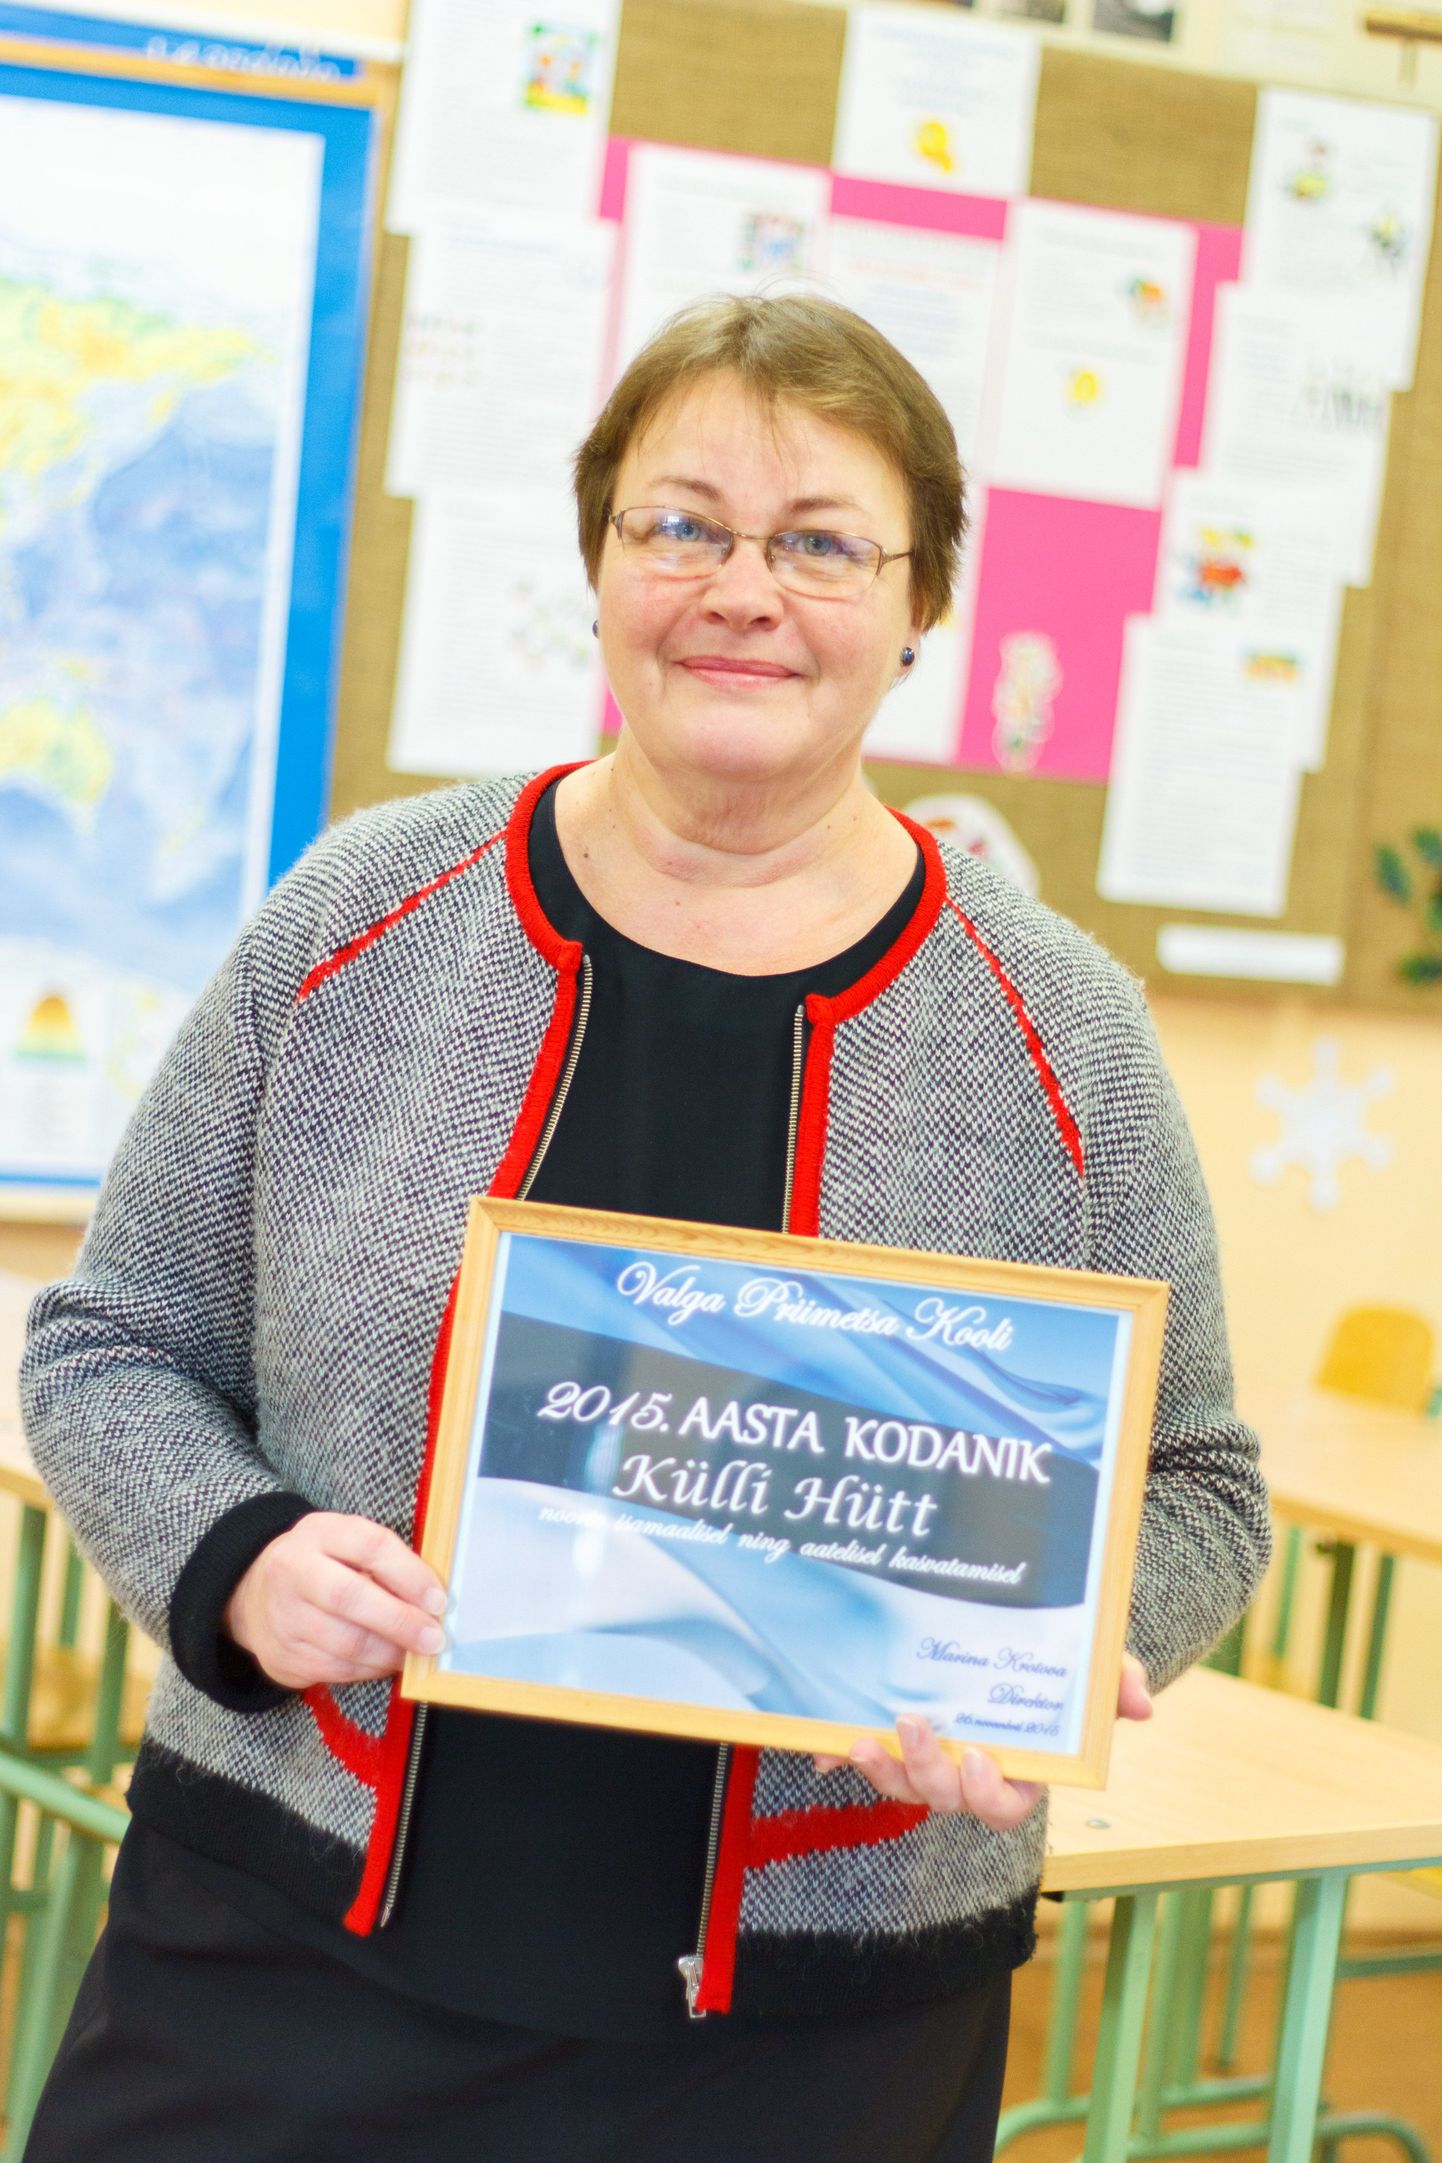 Priimetsa kooli esimene aasta kodanik on õpetaja Külli Hütt, kes tunneb uhkust saadud tiitli üle ja leiab, et alus on pandud toredale traditsioonile.